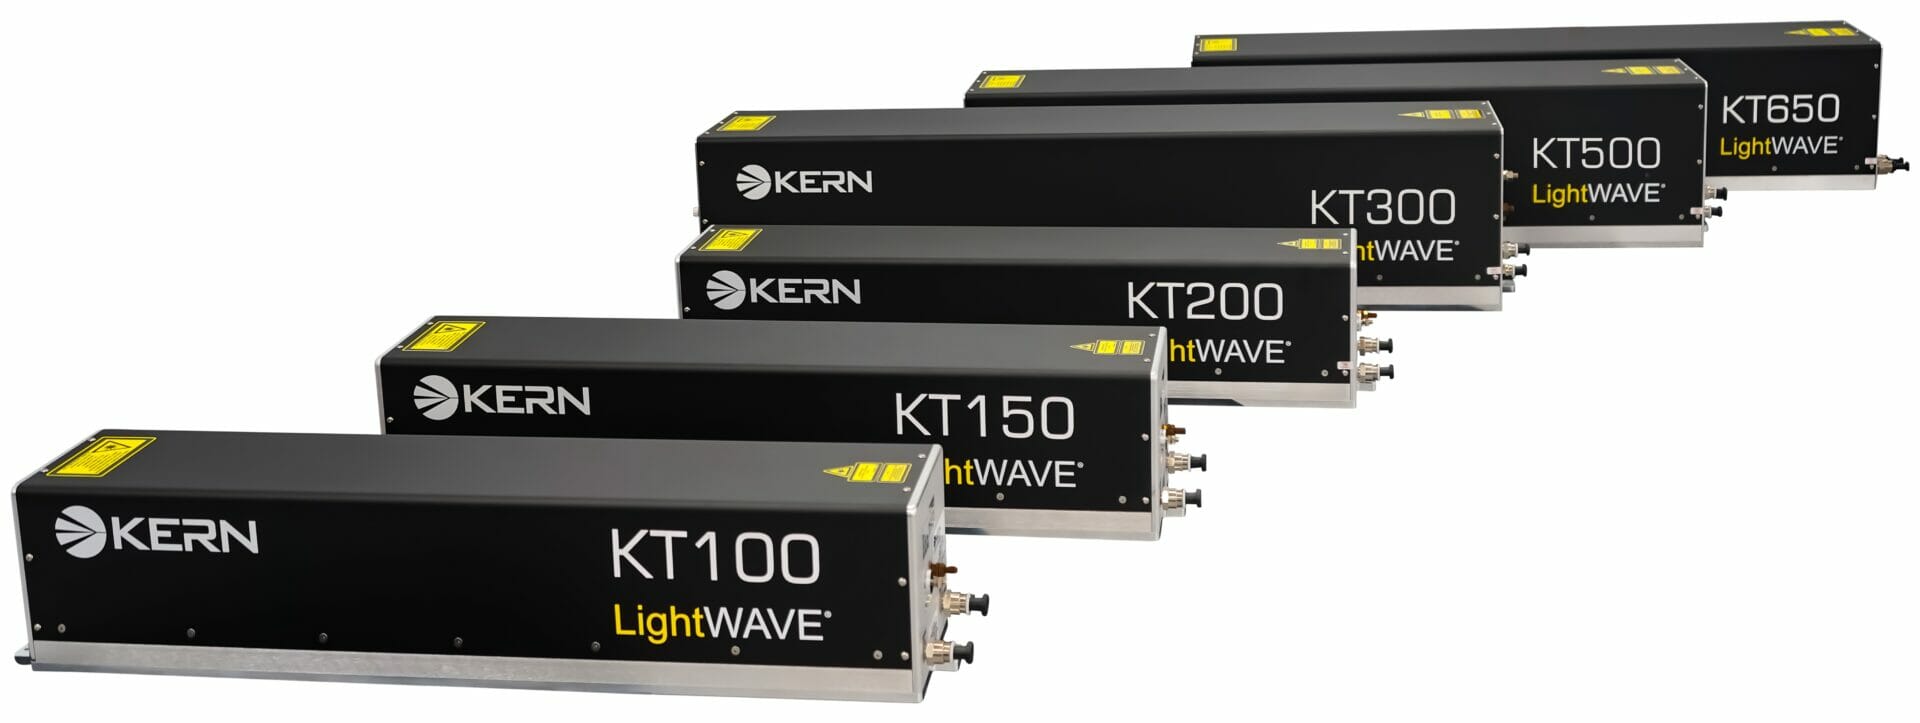 KT laser lineup